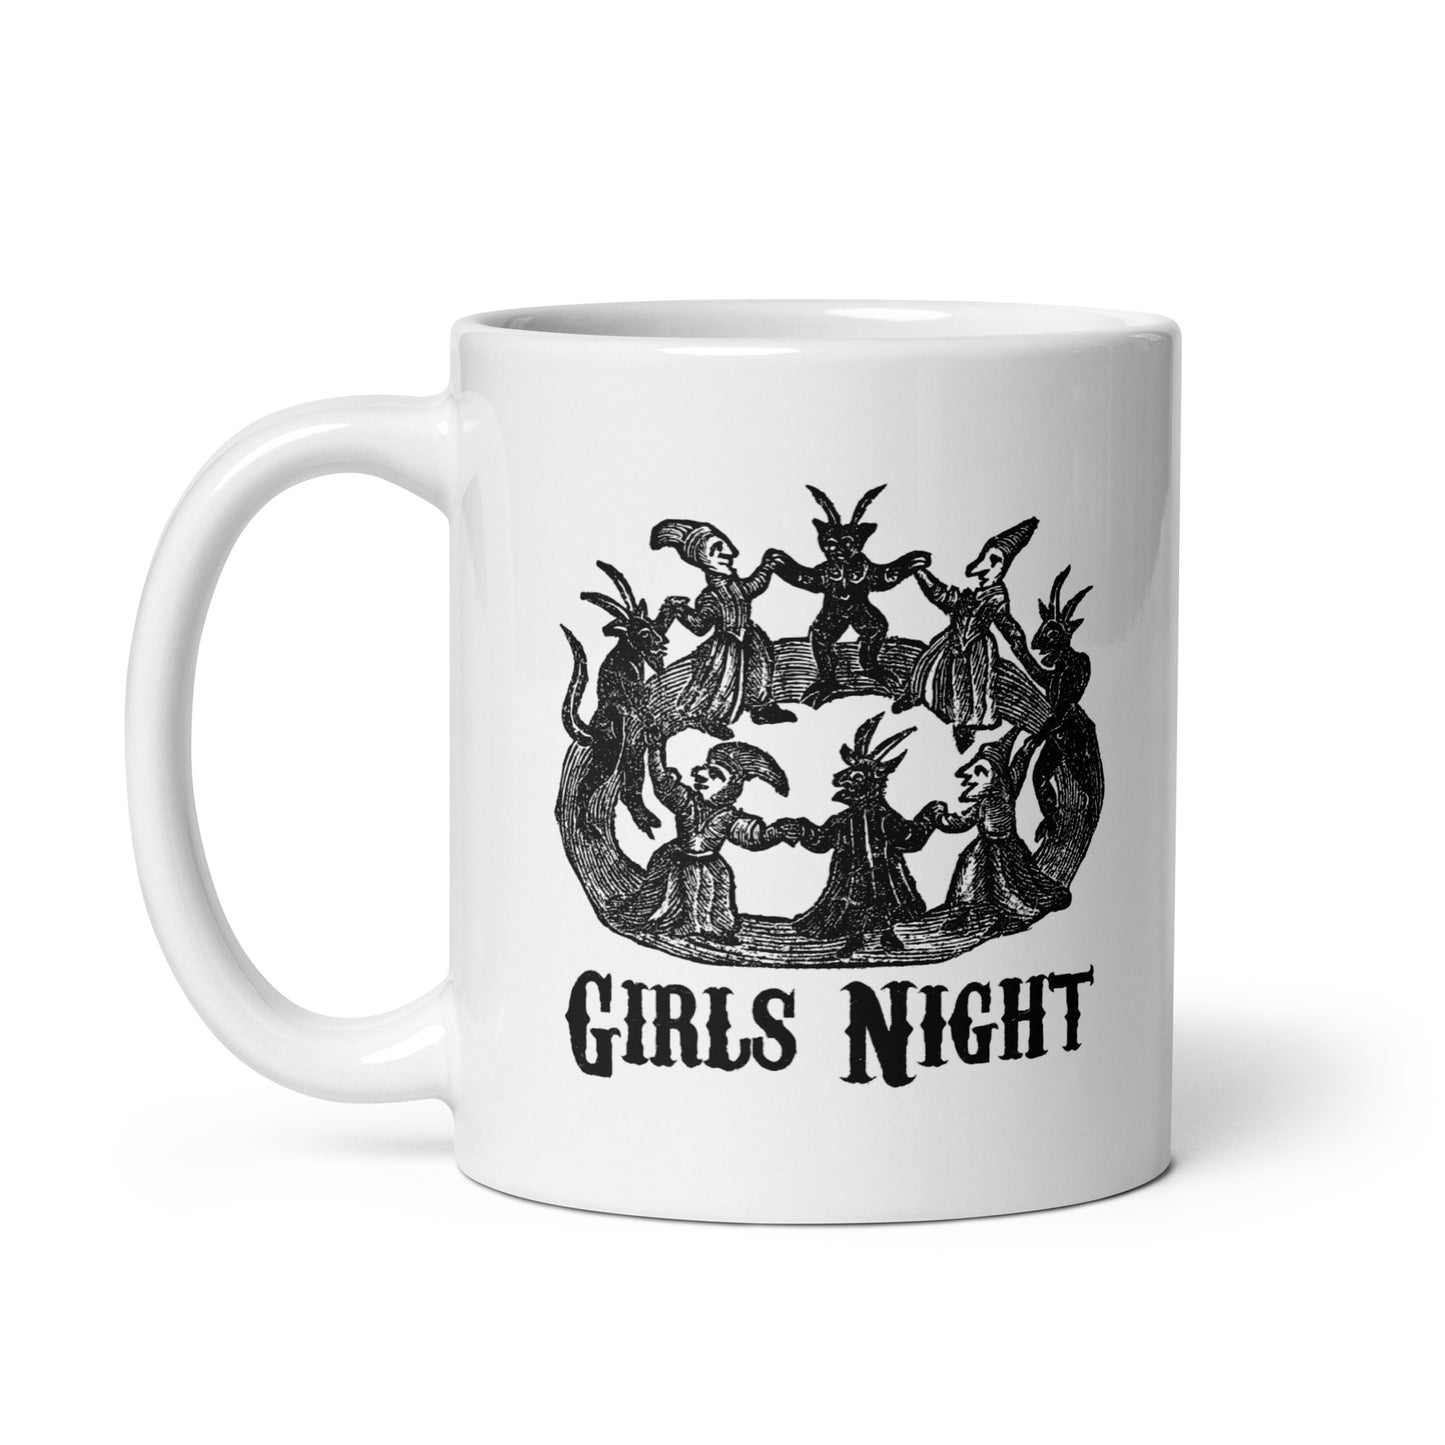 Girls Night mug